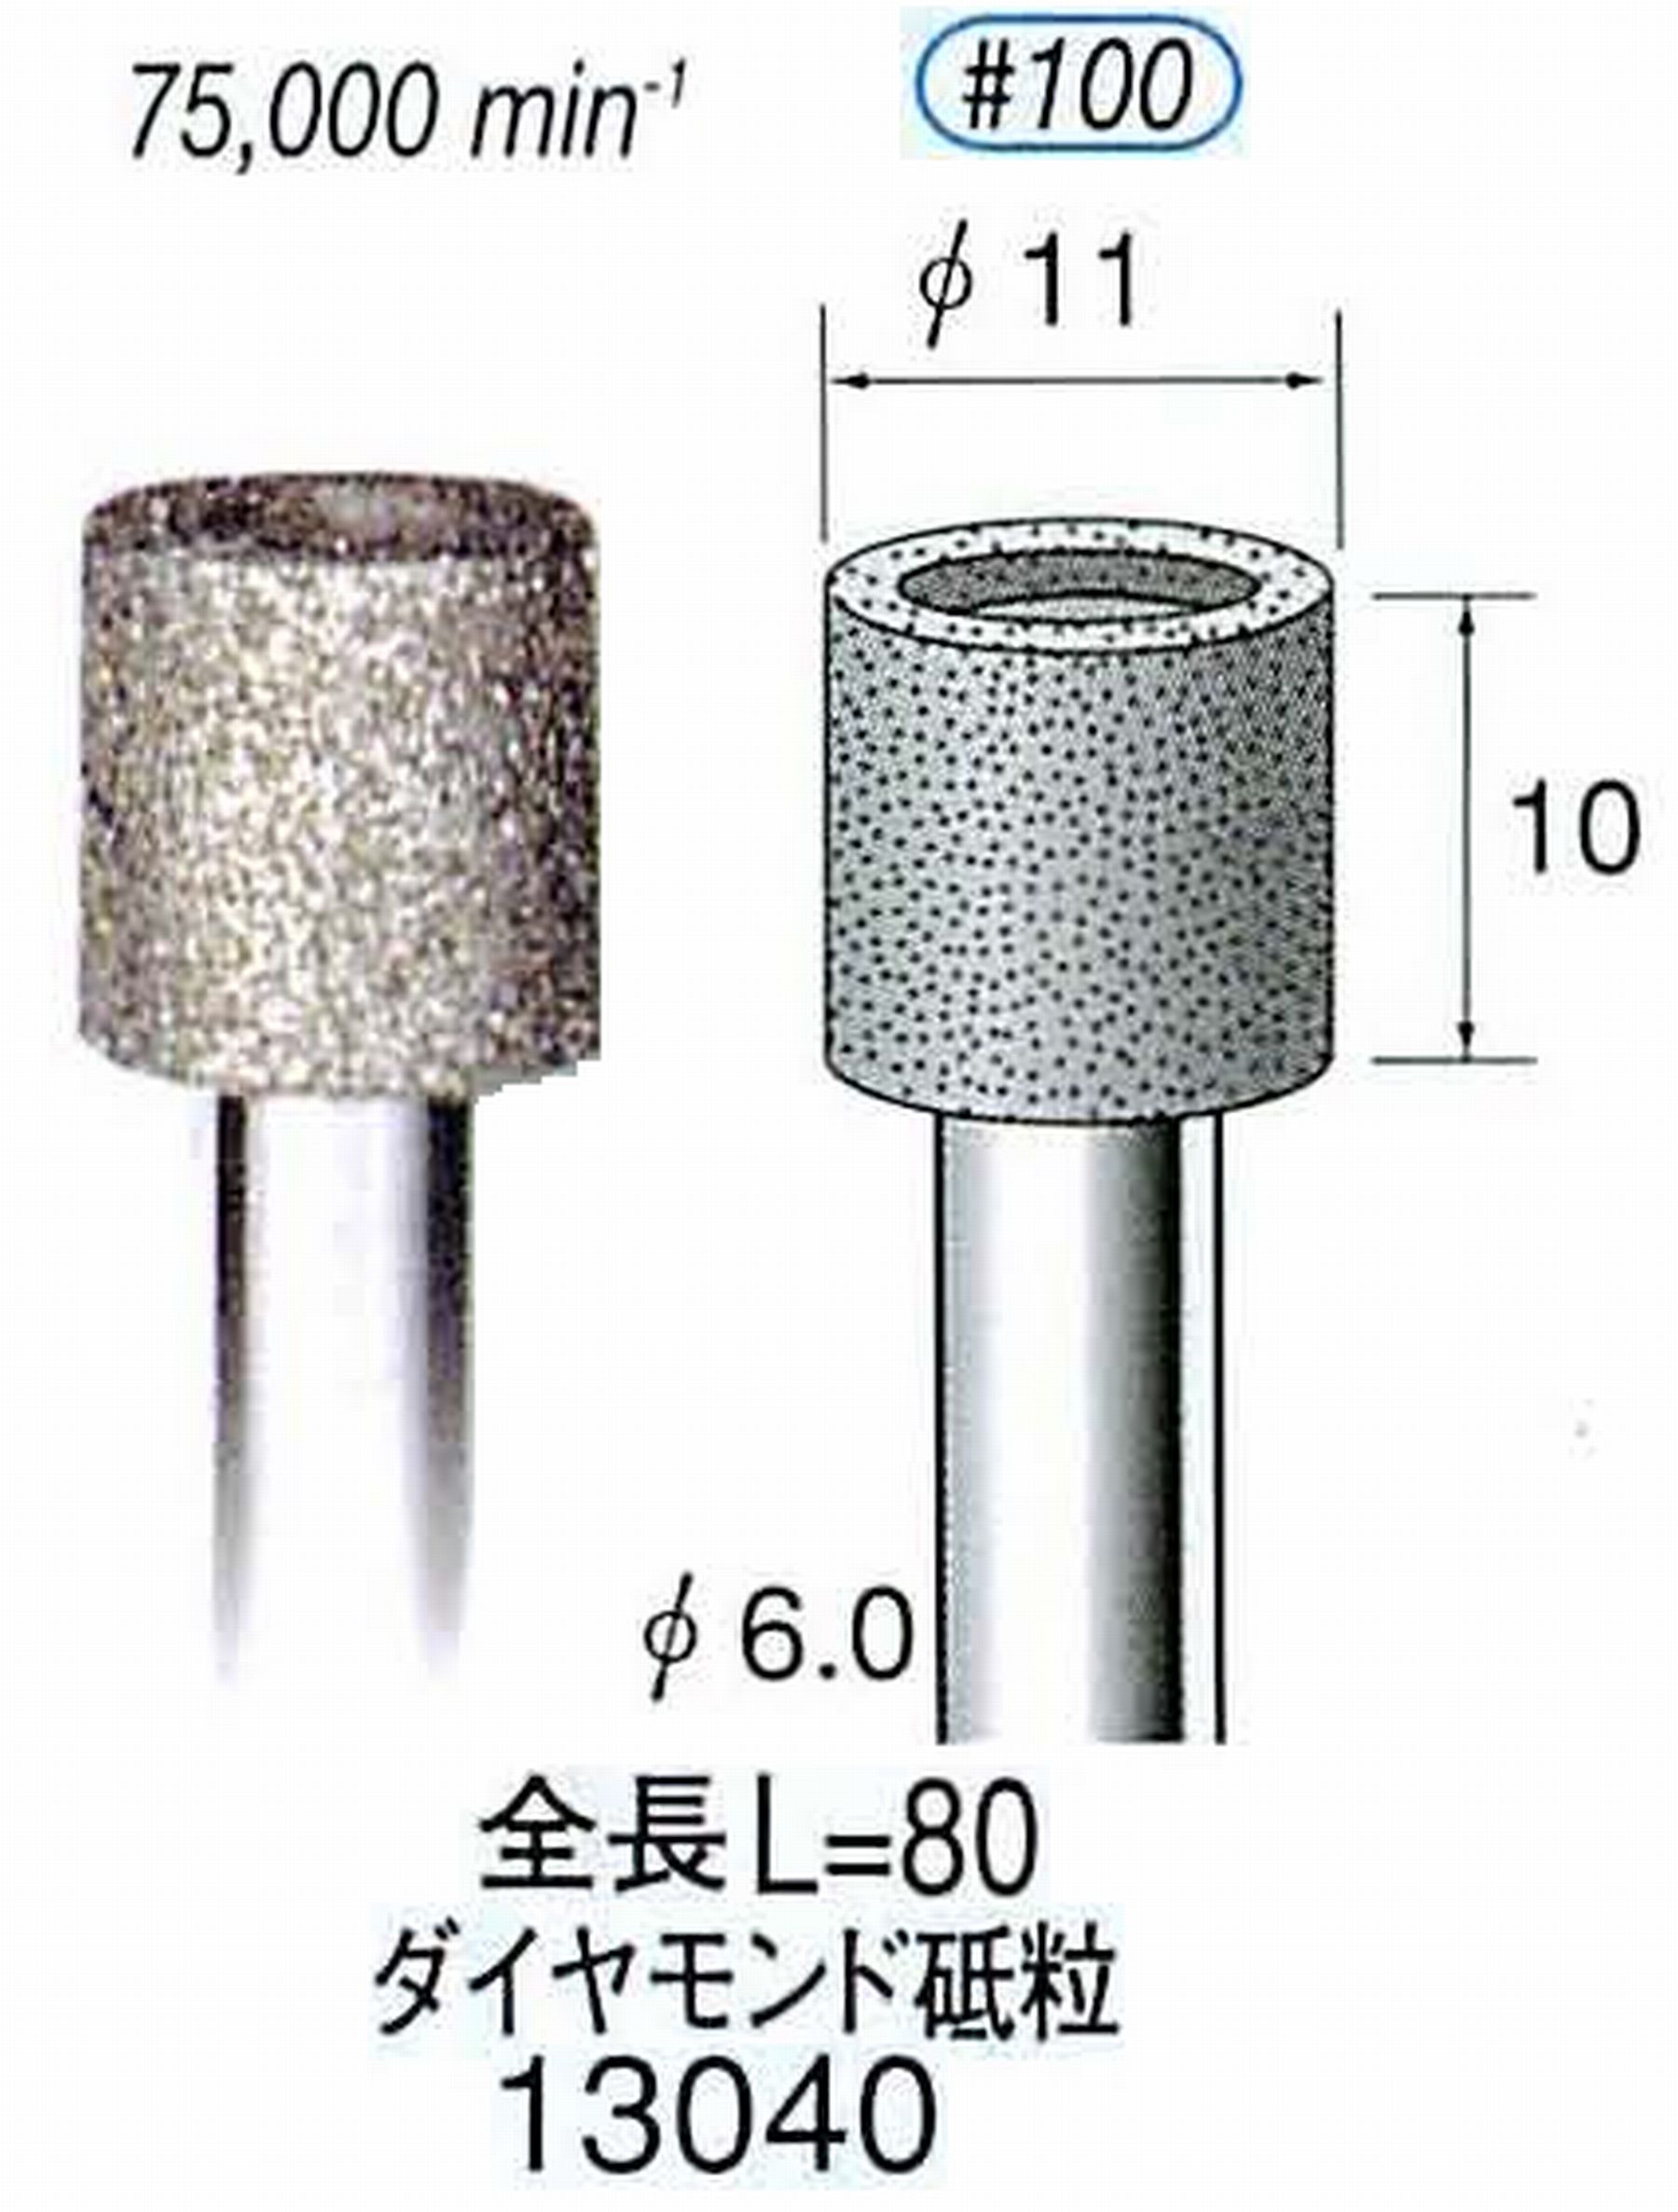 ナカニシ/NAKANISHI 電着ダイヤモンド ダイヤモンド砥粒 軸径(シャンク)φ6.0mm 13040